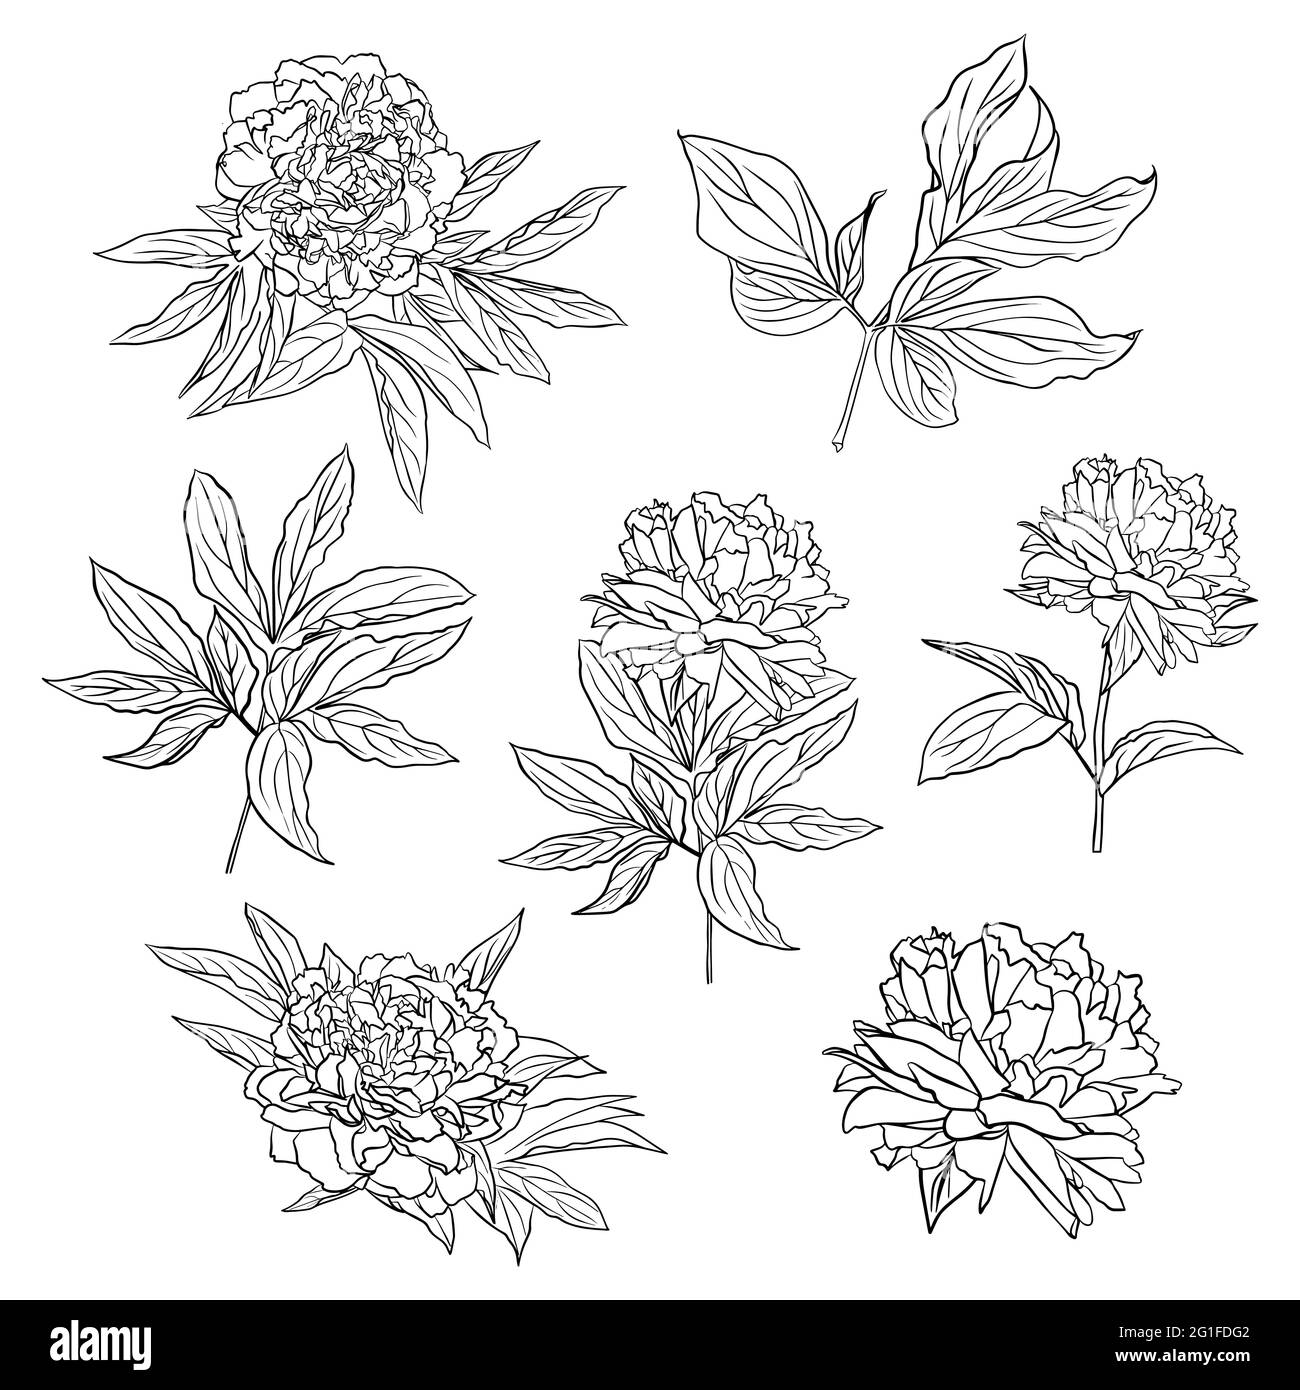 Eine Reihe von Konturzeichnungen von Pfingstrosenblüten und Blättern. Vektor-isoliertes Clipart. Minimales monochromes, handgezeichnetes botanisches Design. Stock Vektor